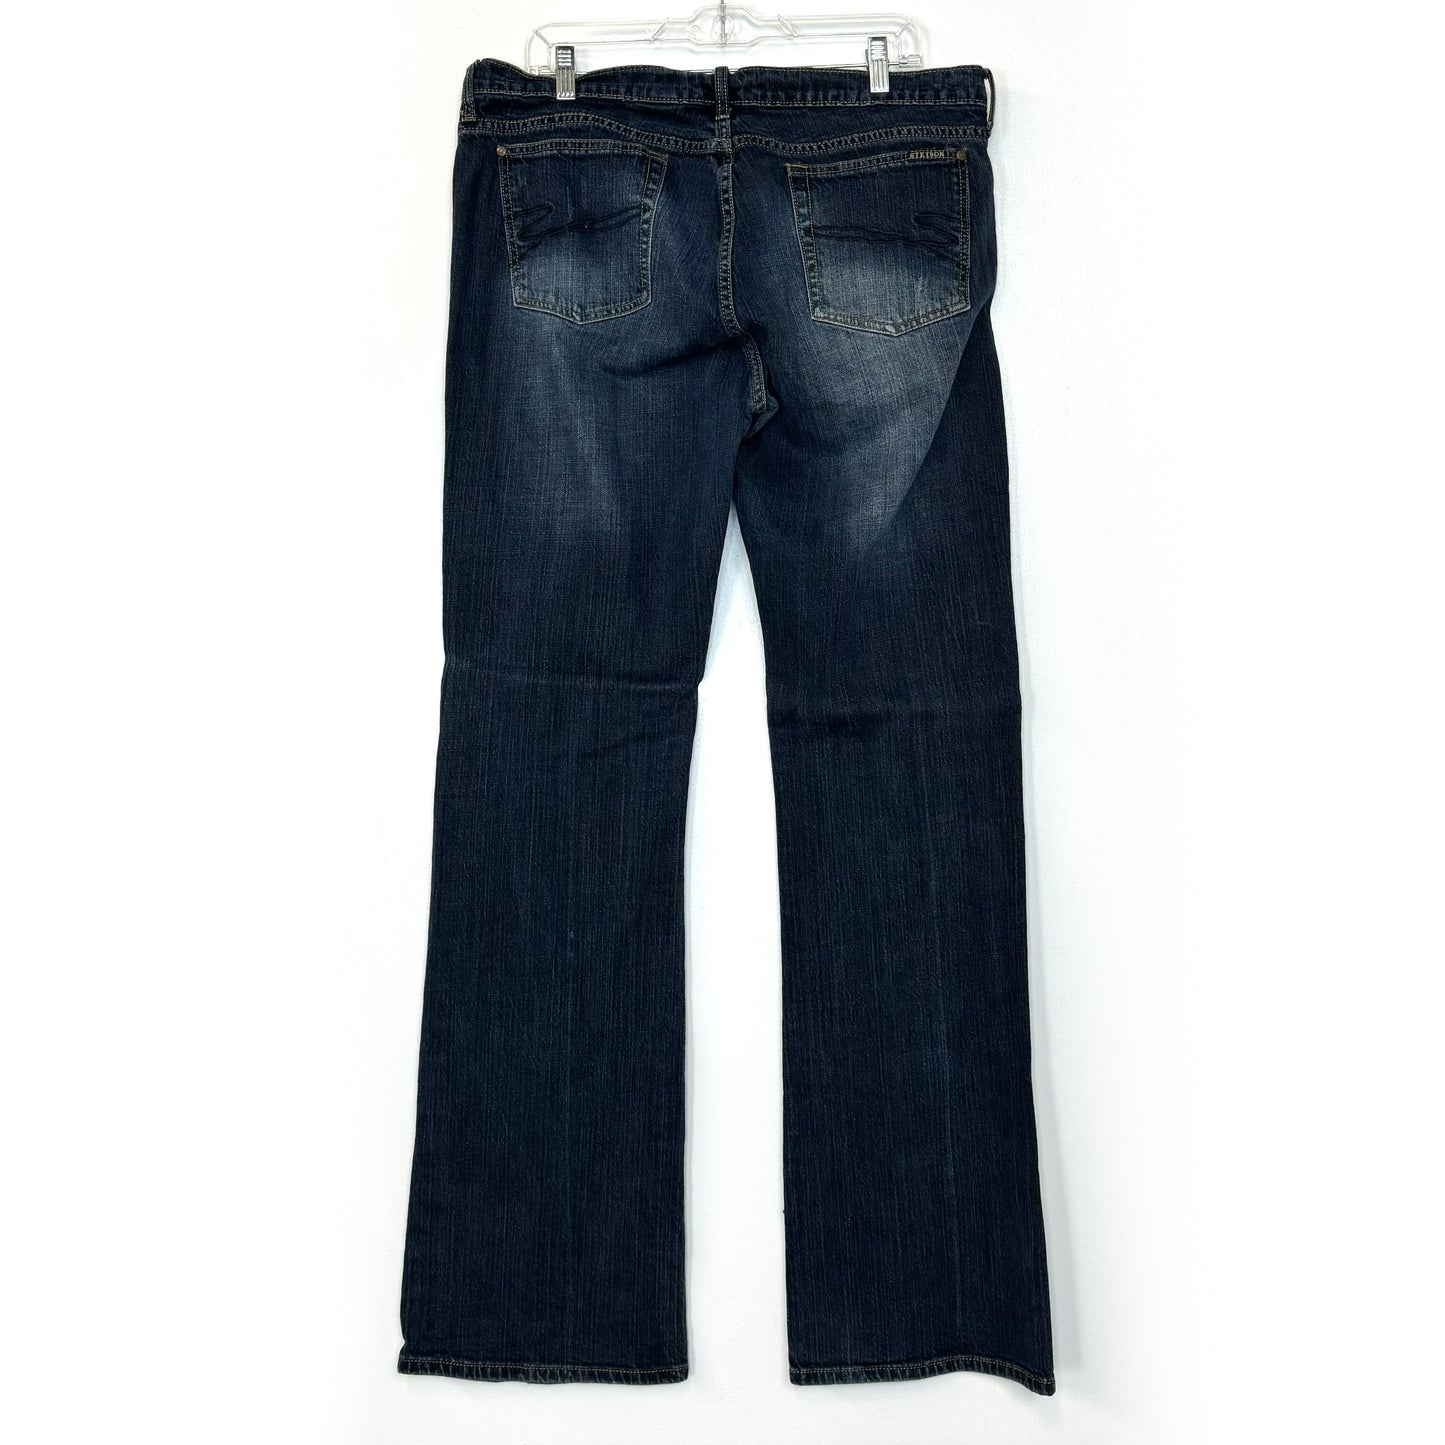 Stetson | Womens Classic Bootcut Denim Jeans | Color: Blue | Size: 18 XX-Long | Pre-Worn